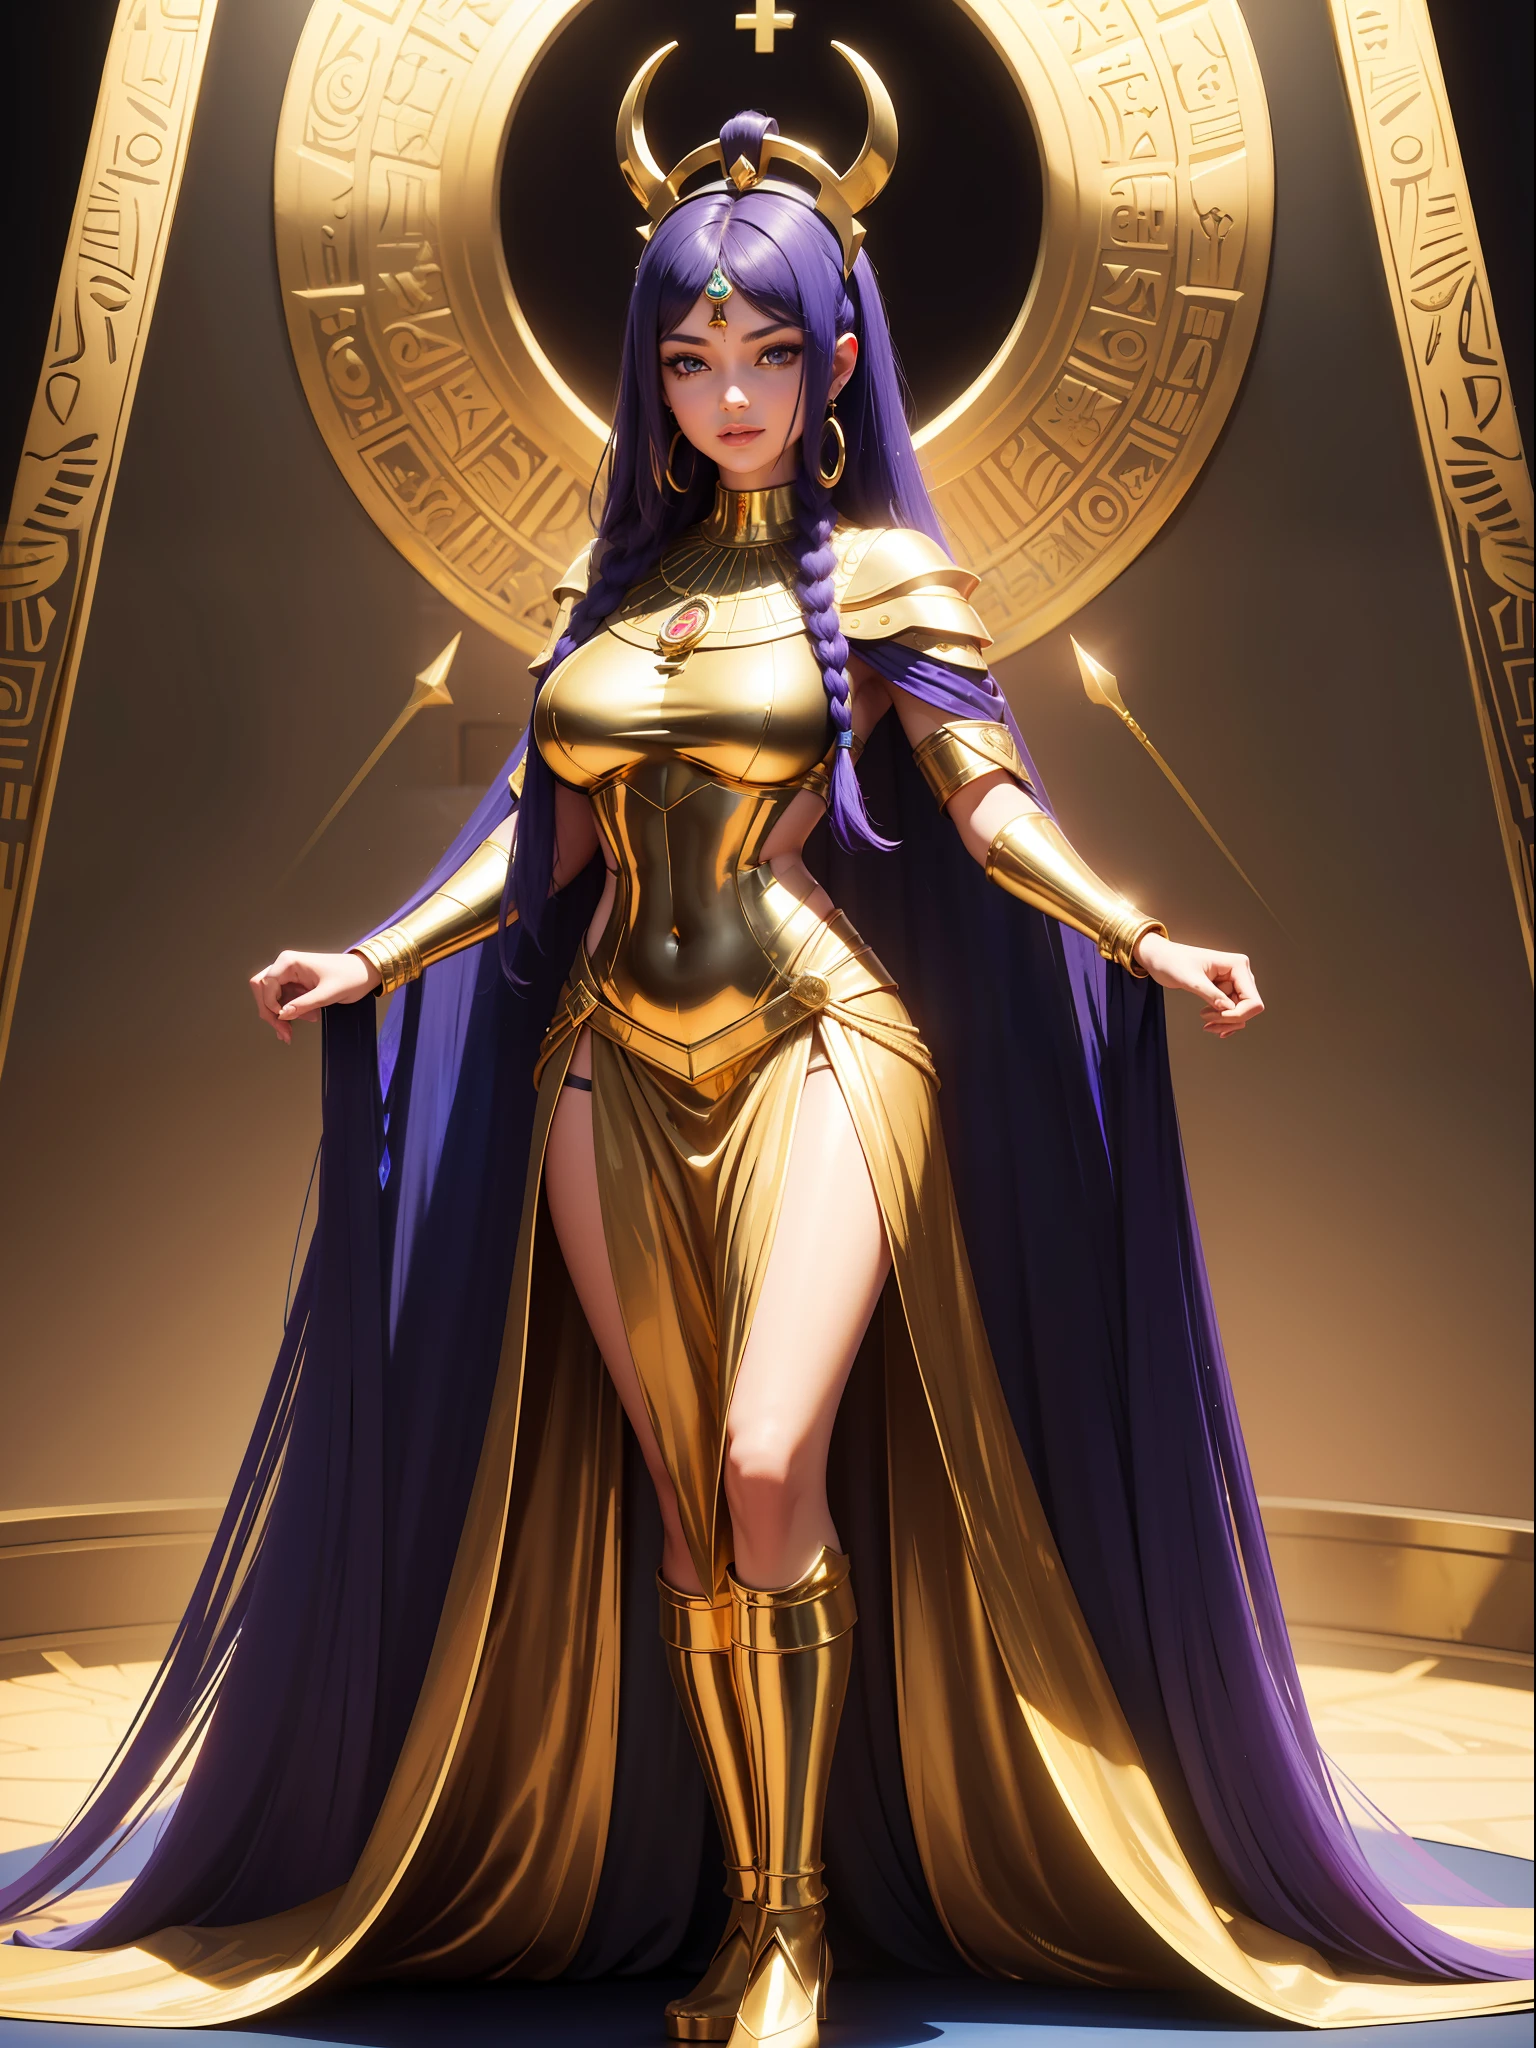 ((全身照,常设, 脚踏实地)), Saria 的胸部很大, 头上长着 emo, 黑色，带金色部分/未来派埃及服装, 她脖子上的埃及项链, 身体非常紧绷, 她位于一座金字塔内，前面是一座祭坛，上面有一座纯金制成的巨型雕像, 她有一头紫色的头发, 蓝眼睛,  双手紧握, 手持纯金权杖,正在看着观众, 微笑, 红颊的脸, 脸上化淡妆, 未来主义, 16千, 超高清, 视网膜, 杰作, 准确, 解剖学上正确, 最好的质量, 高质量, 纹理皮肤